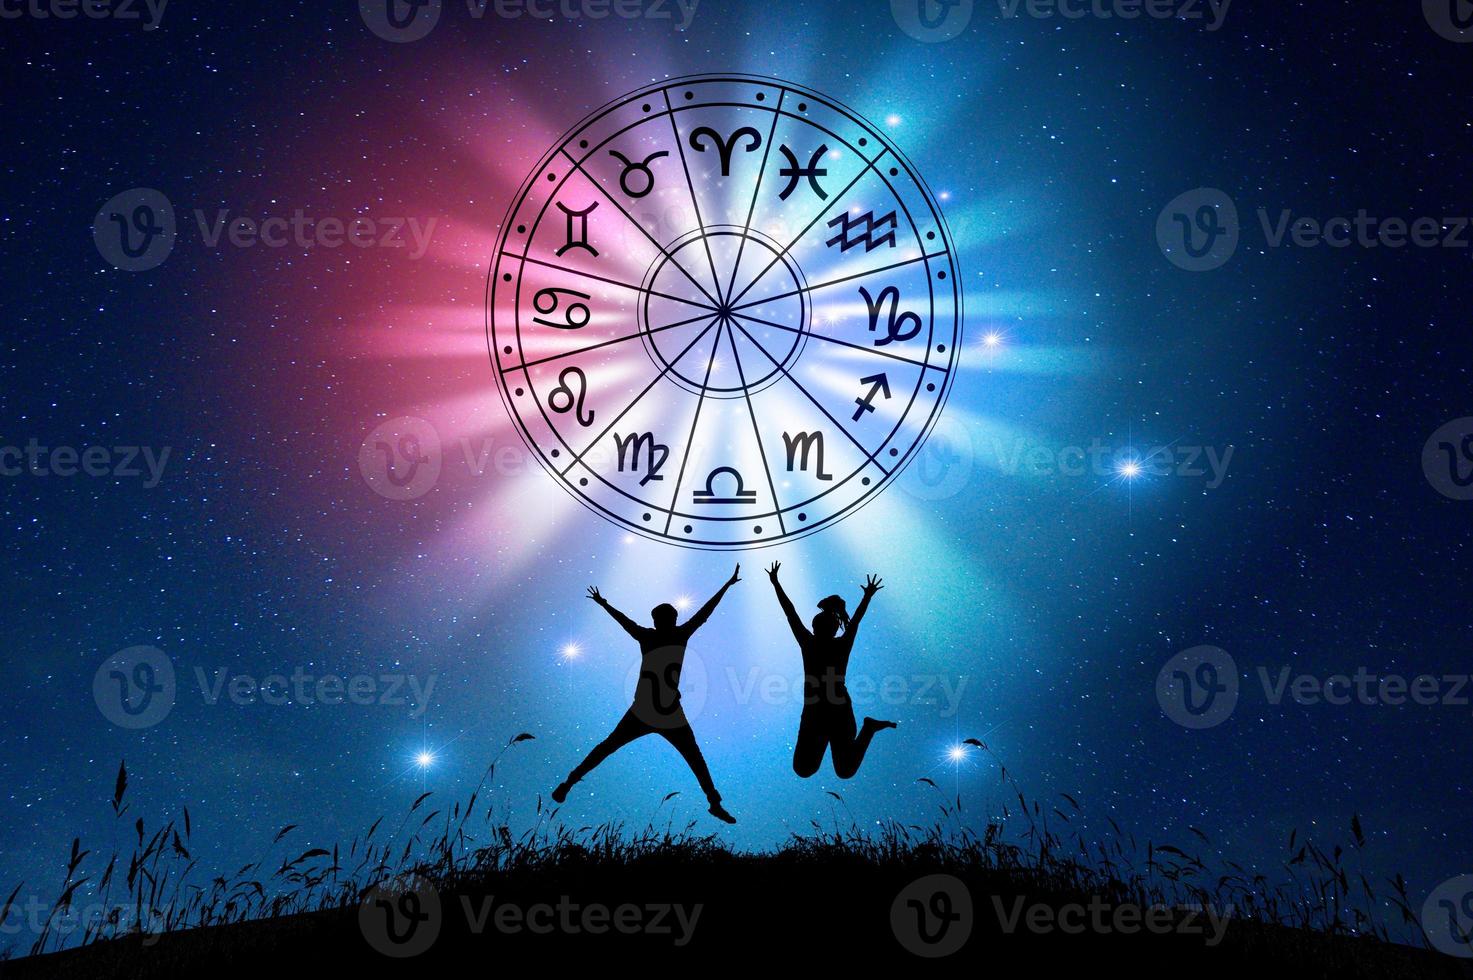 stjärntecken inuti horoskopcirkeln. astrologi på himlen med många stjärnor och månar astrologi och horoskop koncept foto